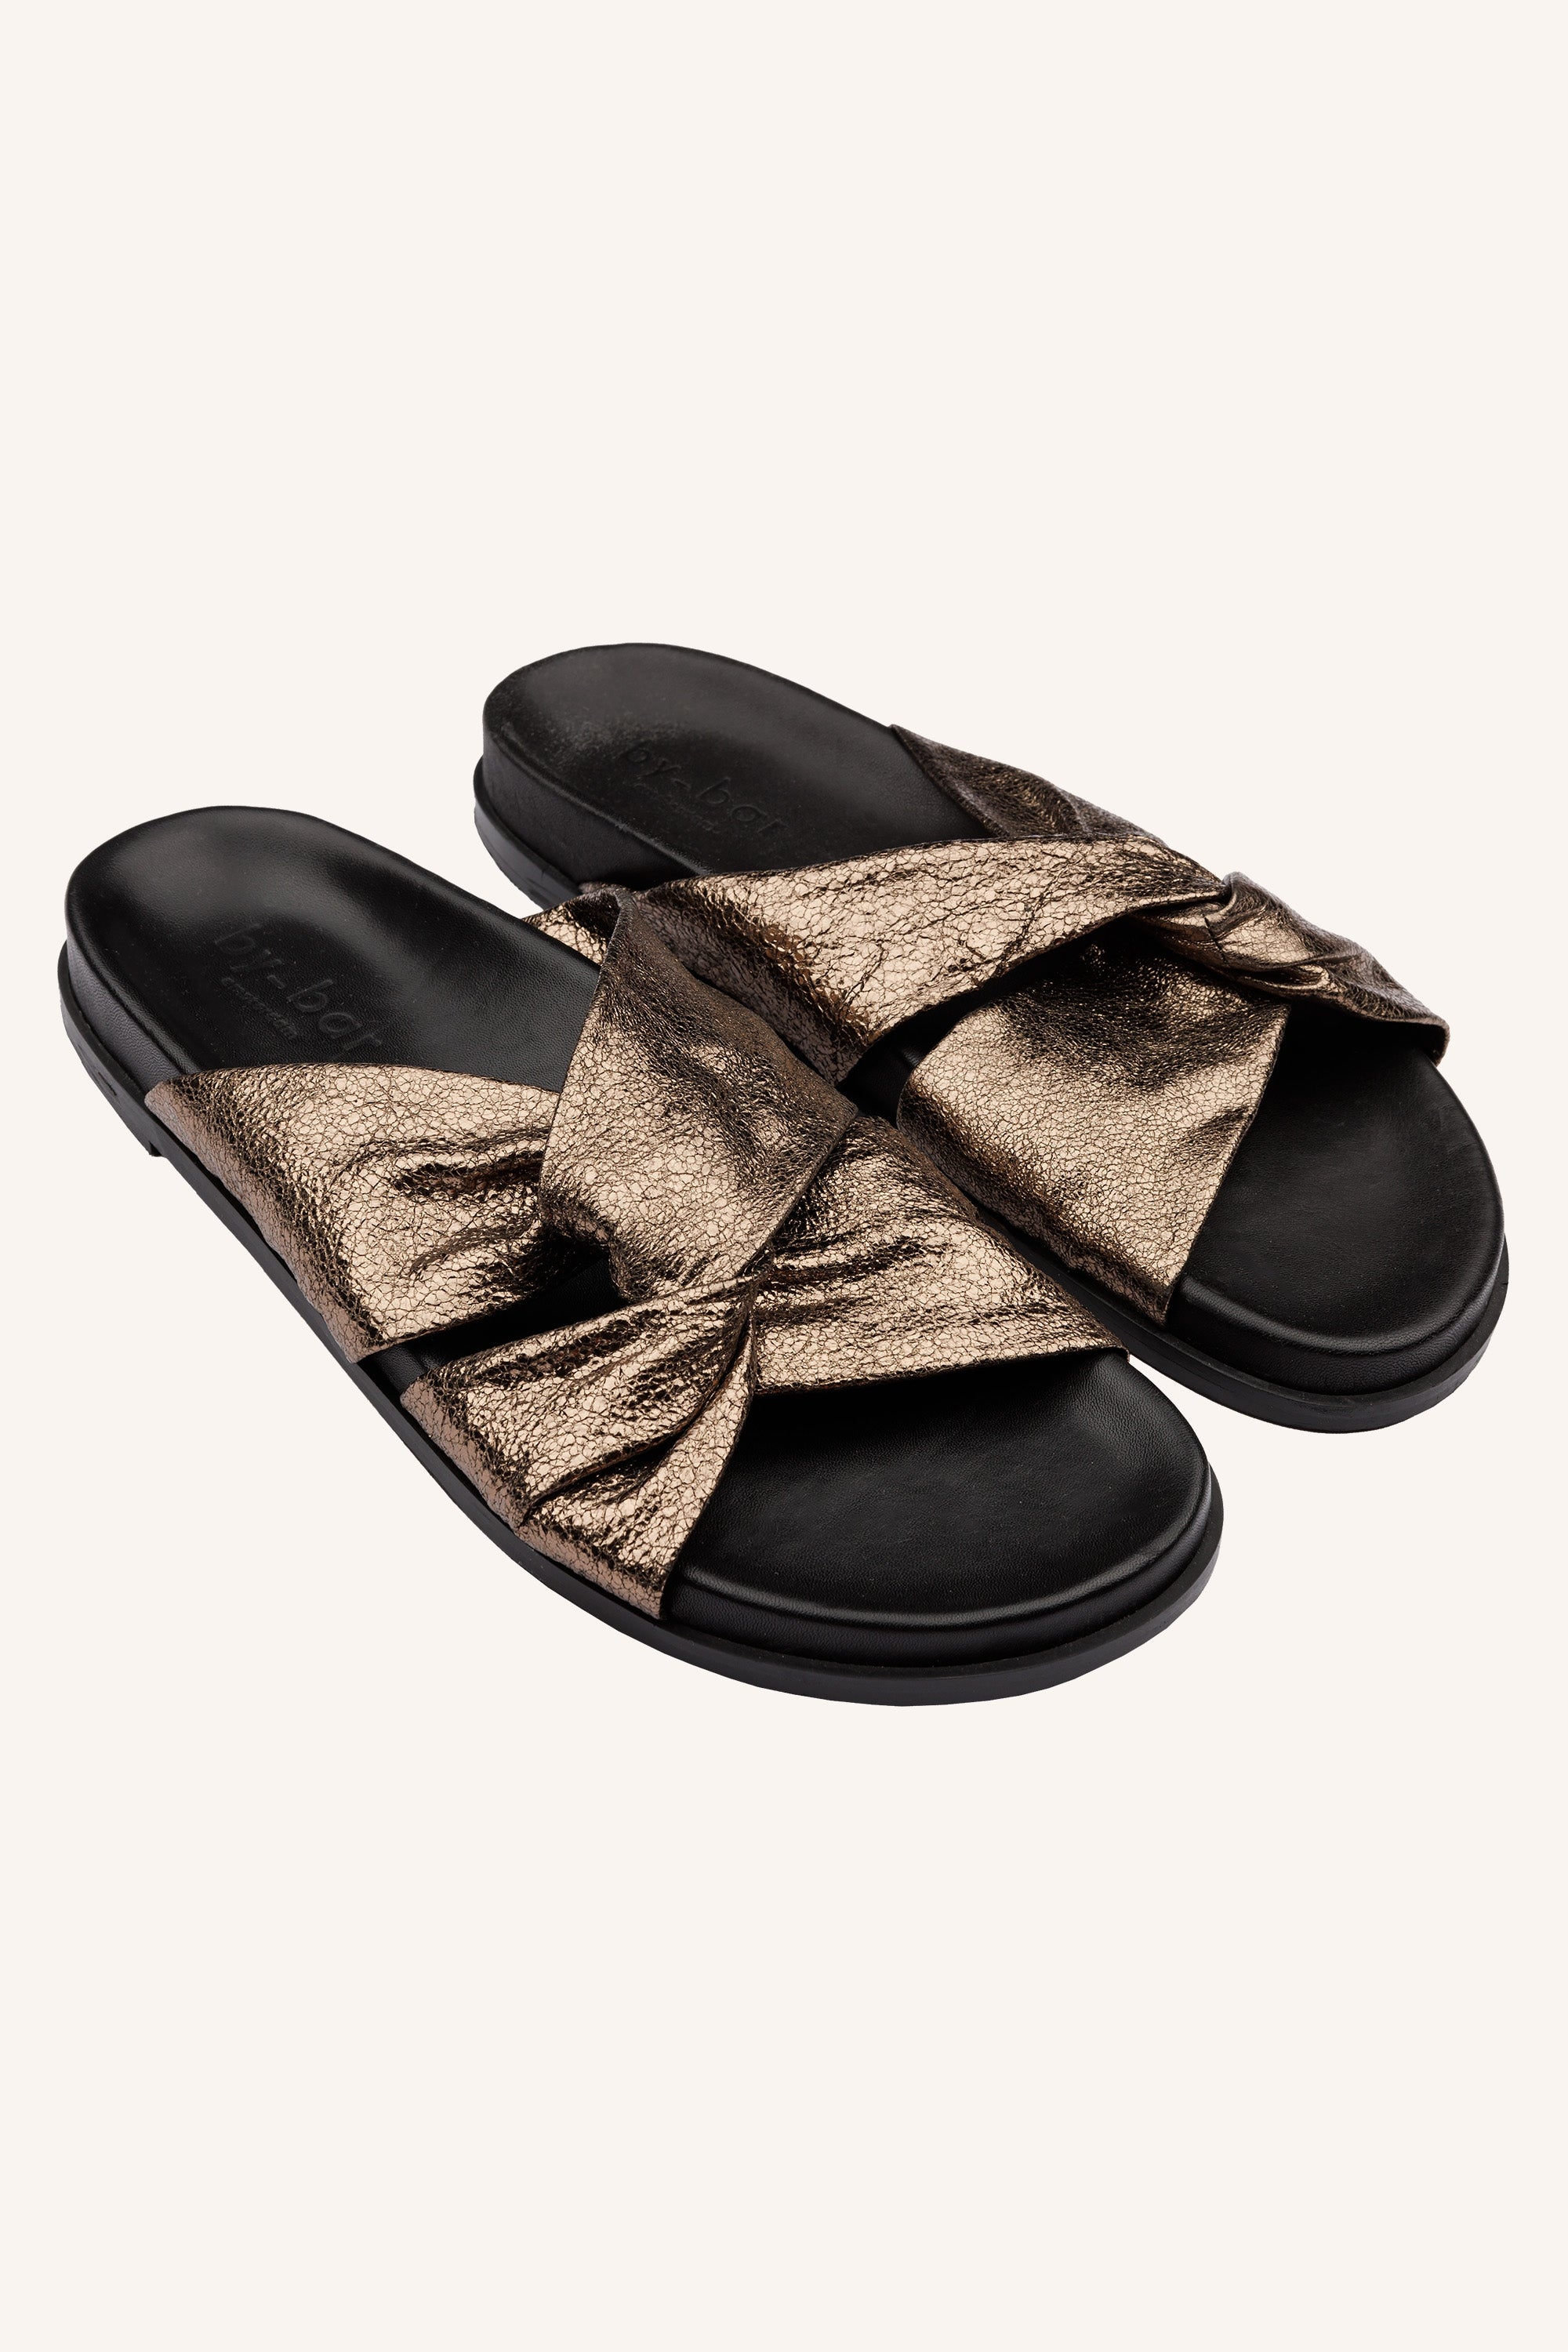 benny sandals | biscuit